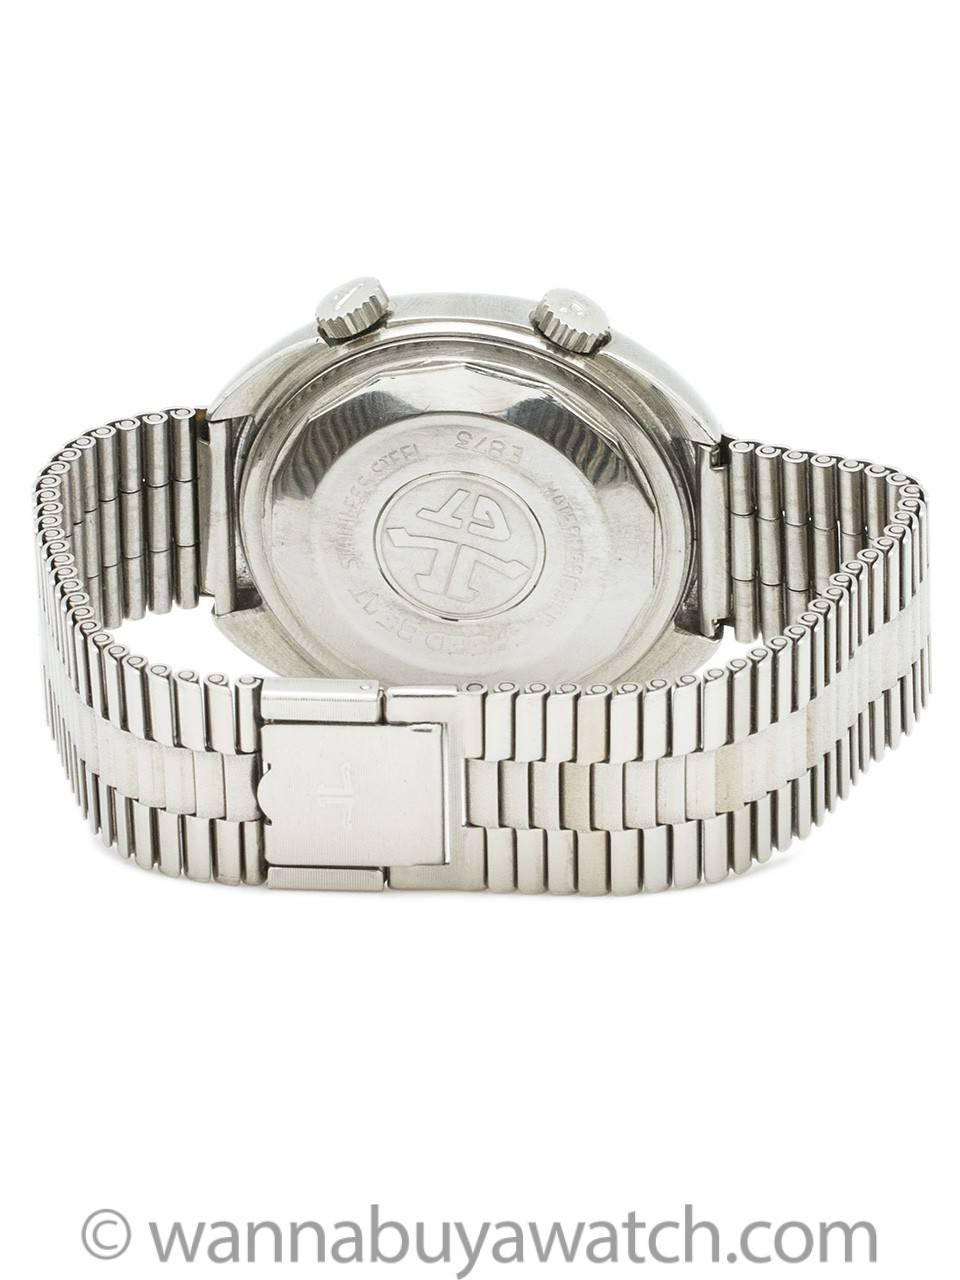 Men's Jaeger Lecoultre Stainless Steel Alarm Automatic Bracelet Wristwatch Ref E873 